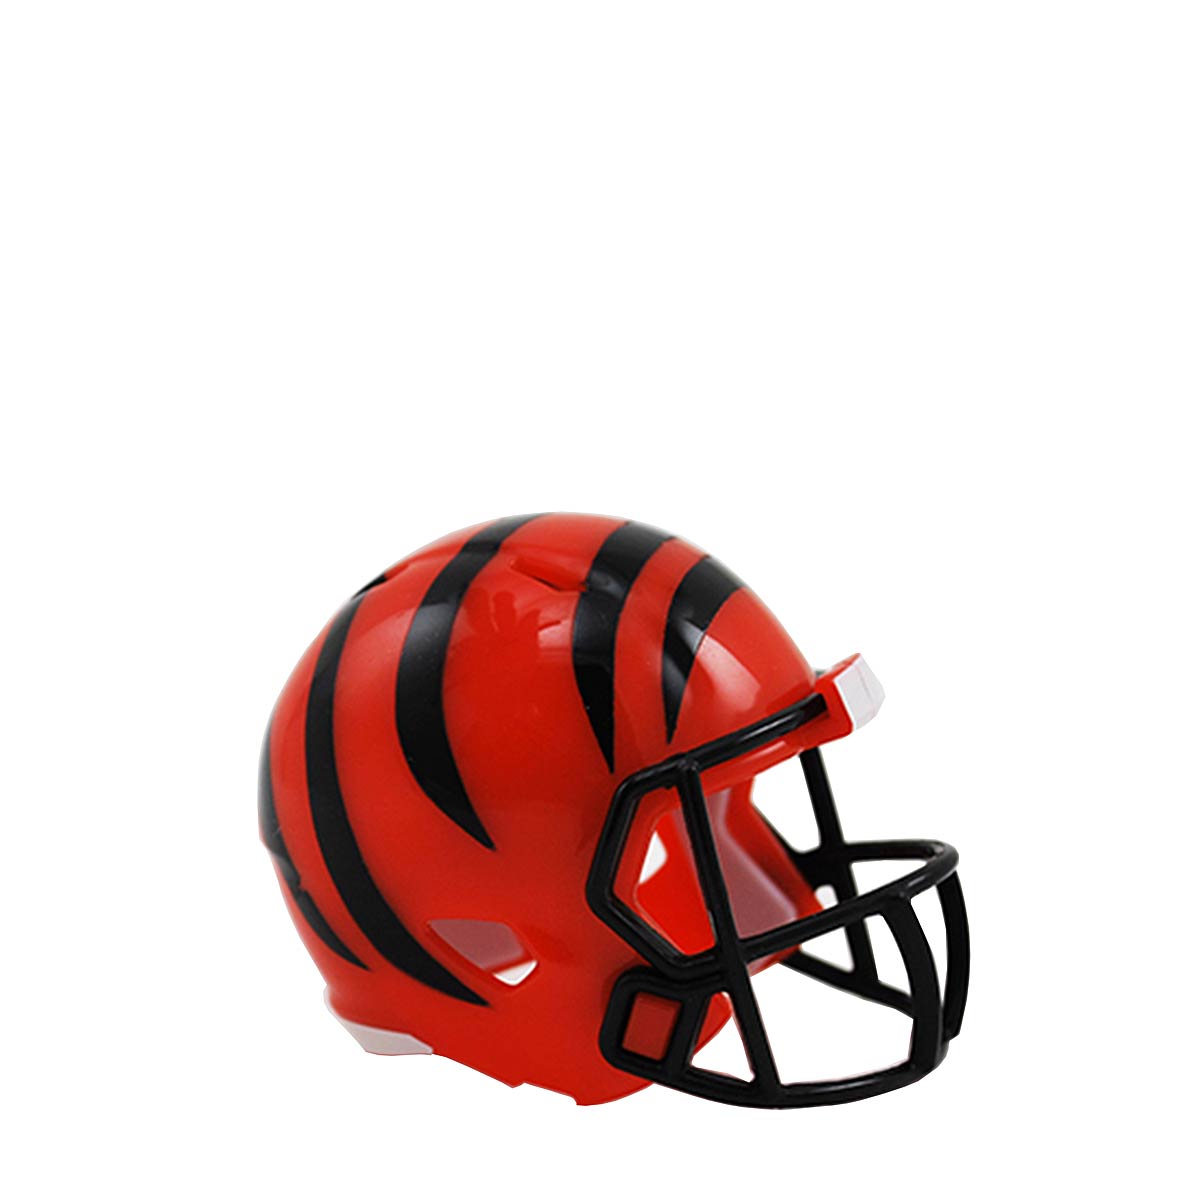 Riddell Nfl Pocket Size Single Helm Cincinnati Bengals, Orange/Black